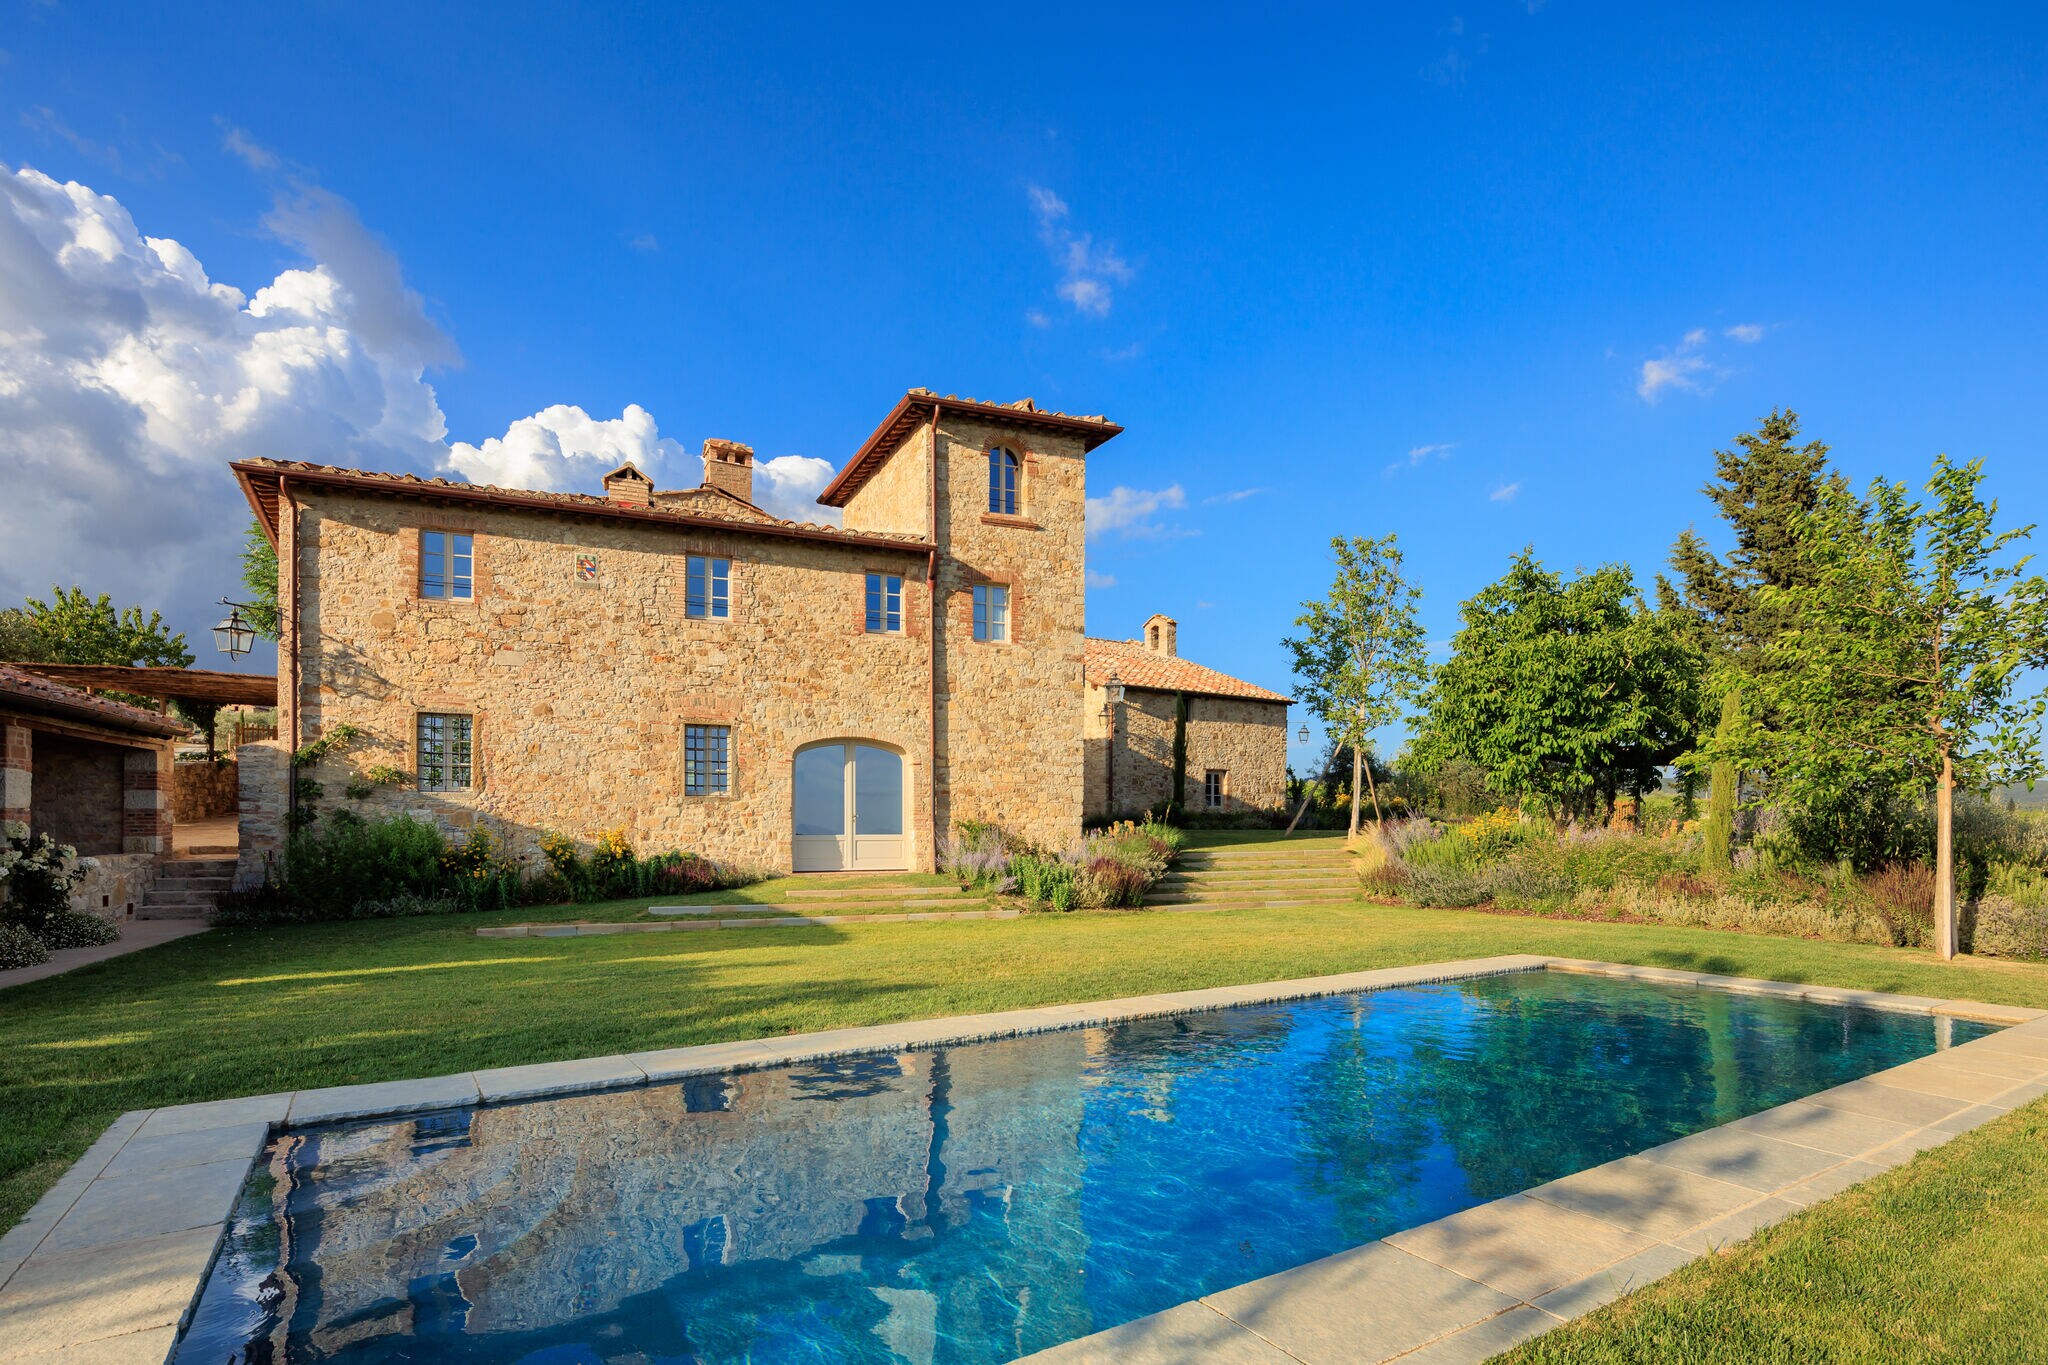 Fantastische villa in Gaiole in Chianti met zwembad